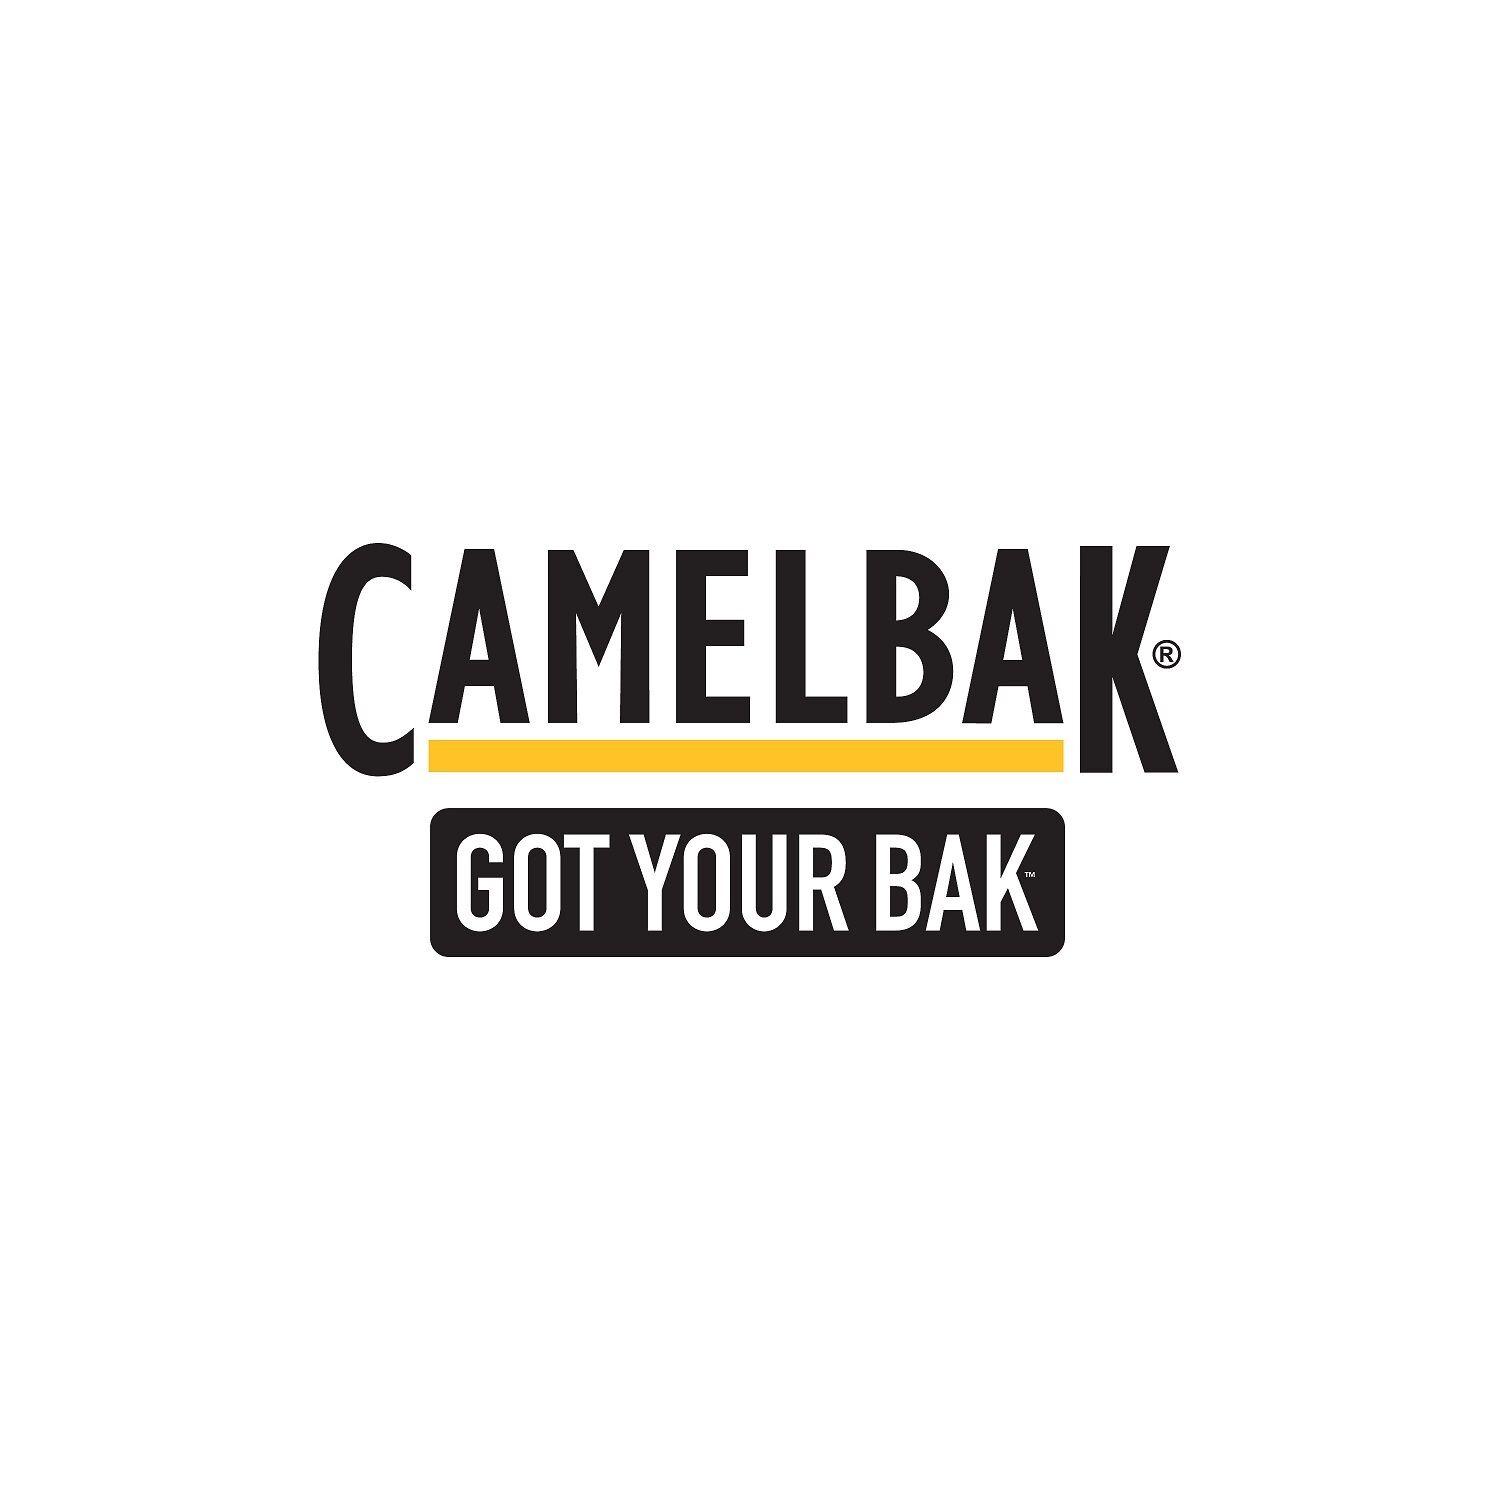 CamelBak Logo - CAMELBAK MULE 3L TACTICAL HYDRATION CARRIER PACK MOLLE CORDURA M.U.L.E.  MILSPEC